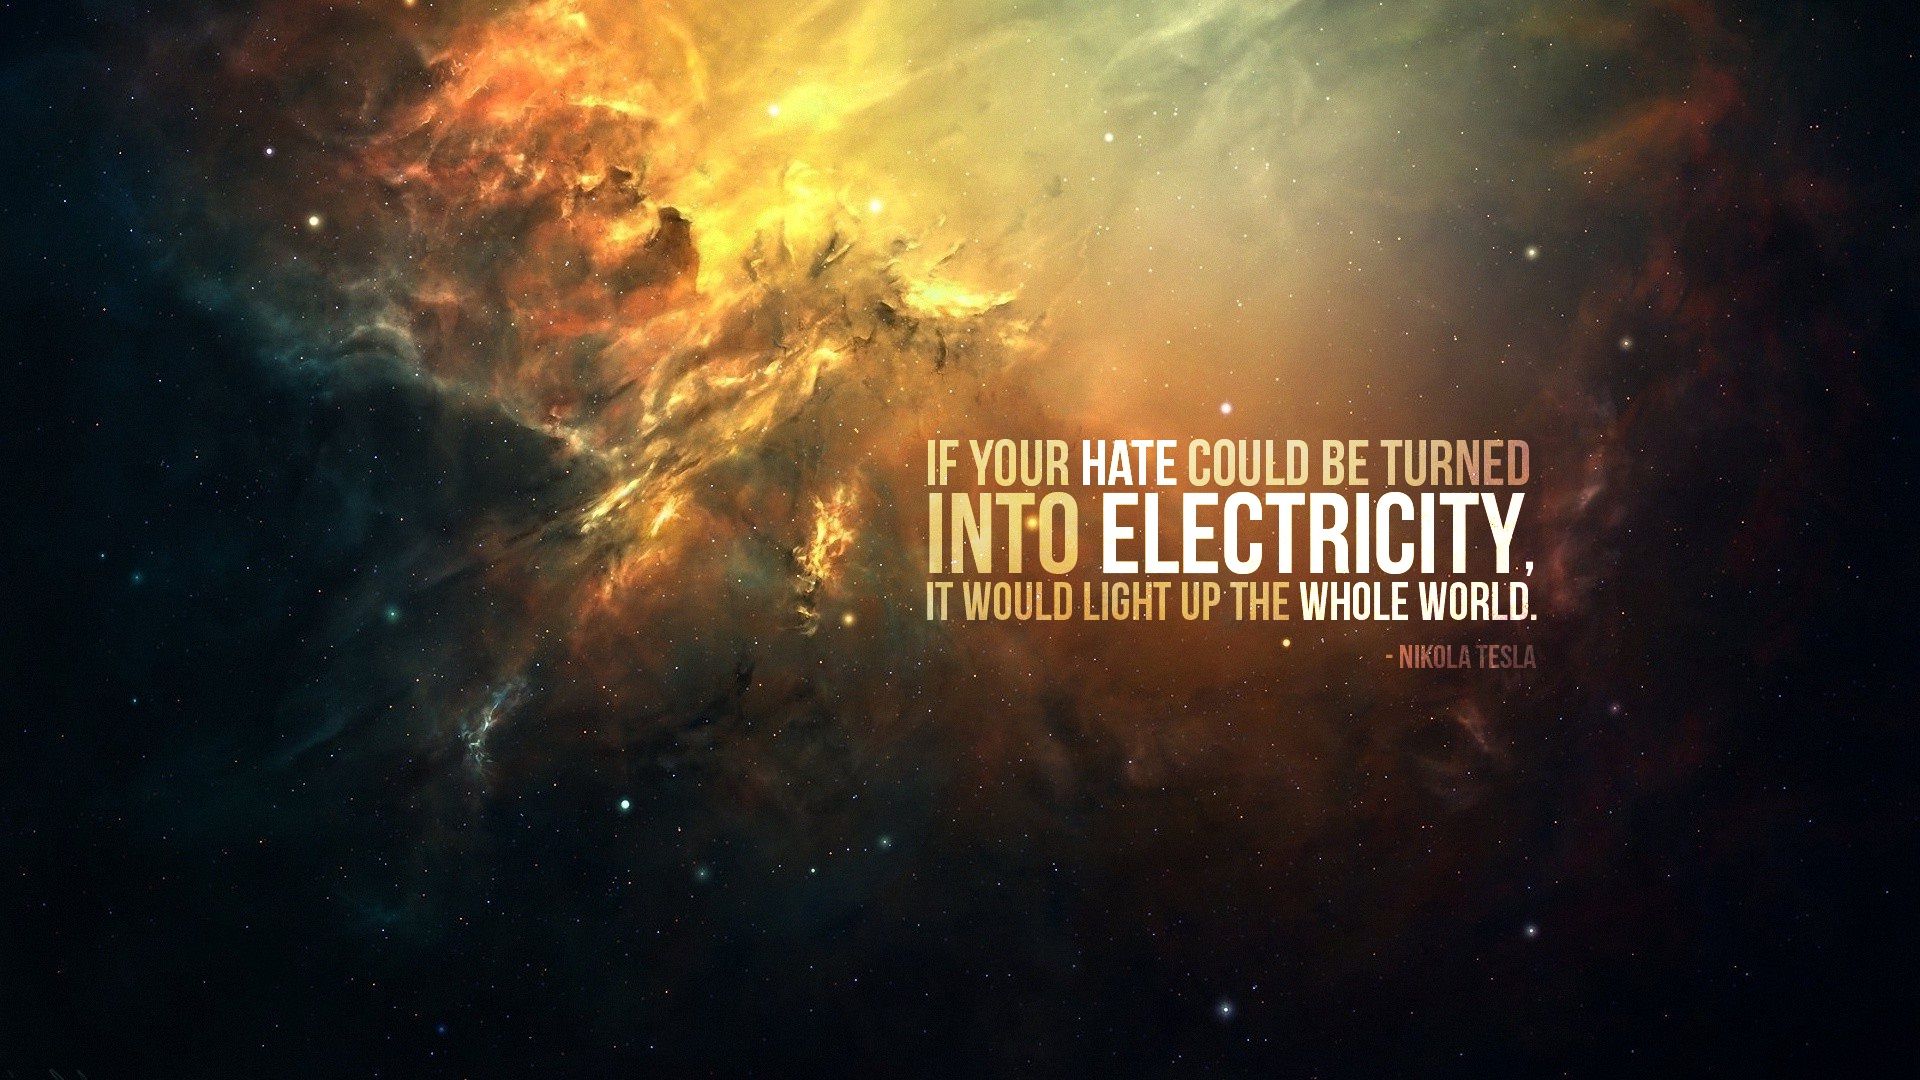 Nikola Tesla Quote HD Wallpaper 1920x1080 ID51863